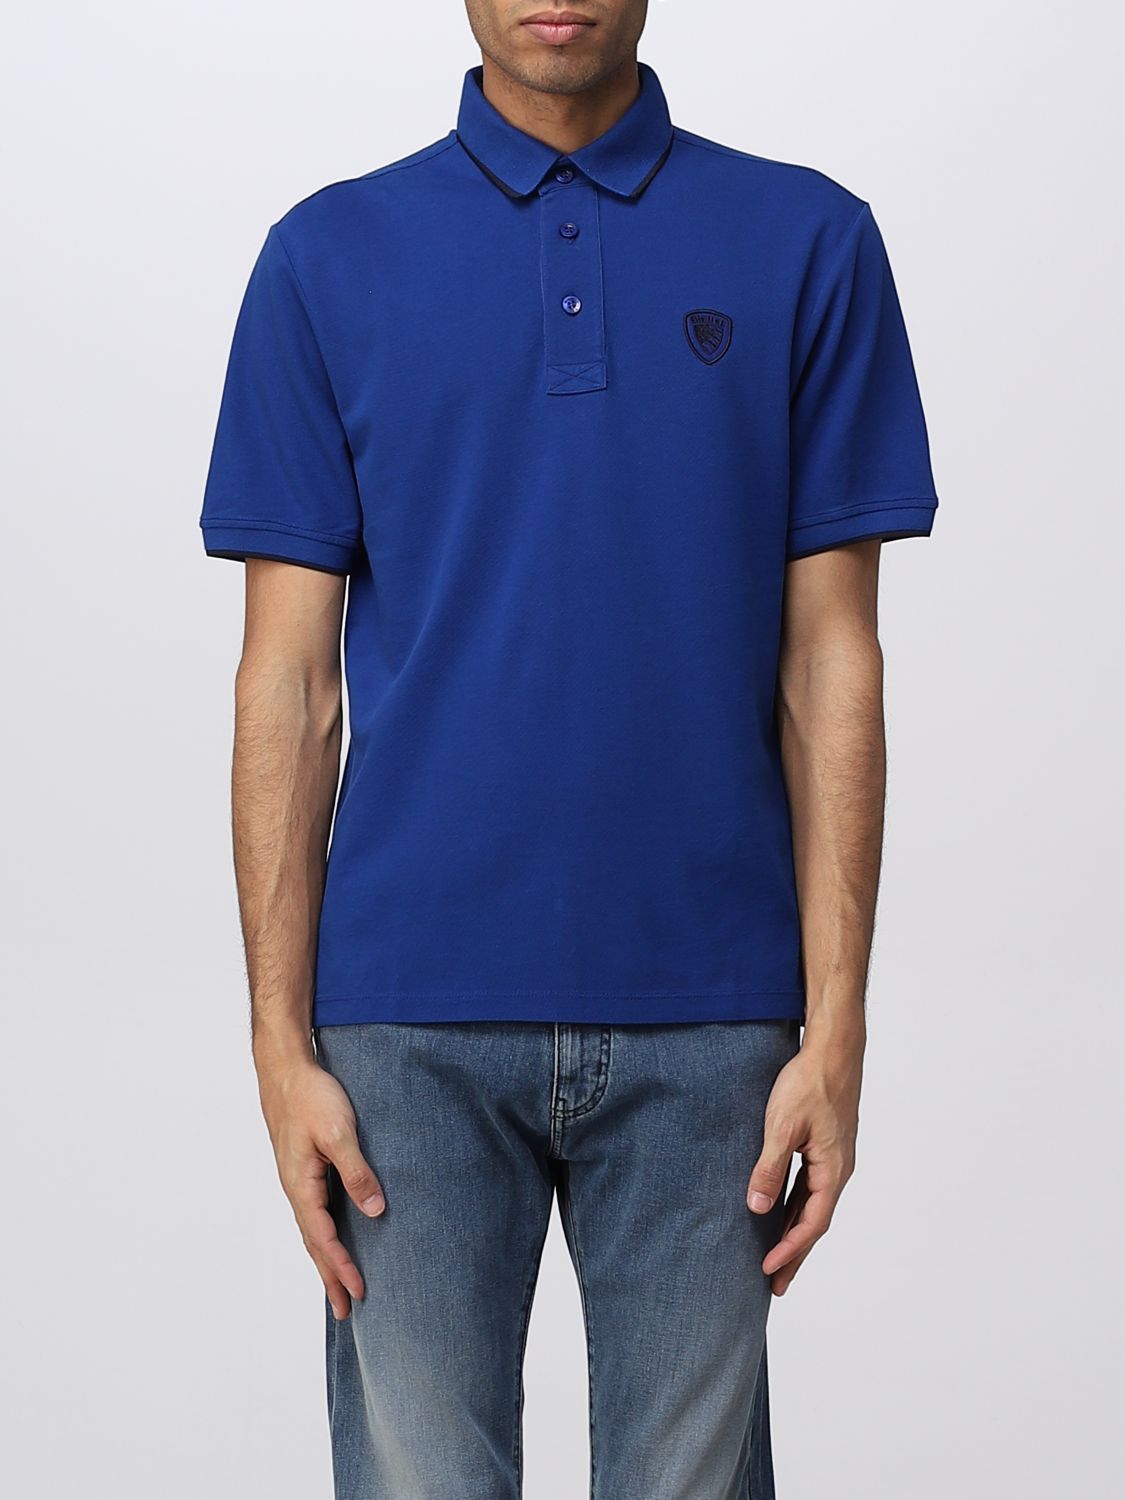 BLAUER: polo shirt for man - Royal Blue | Blauer polo shirt ...